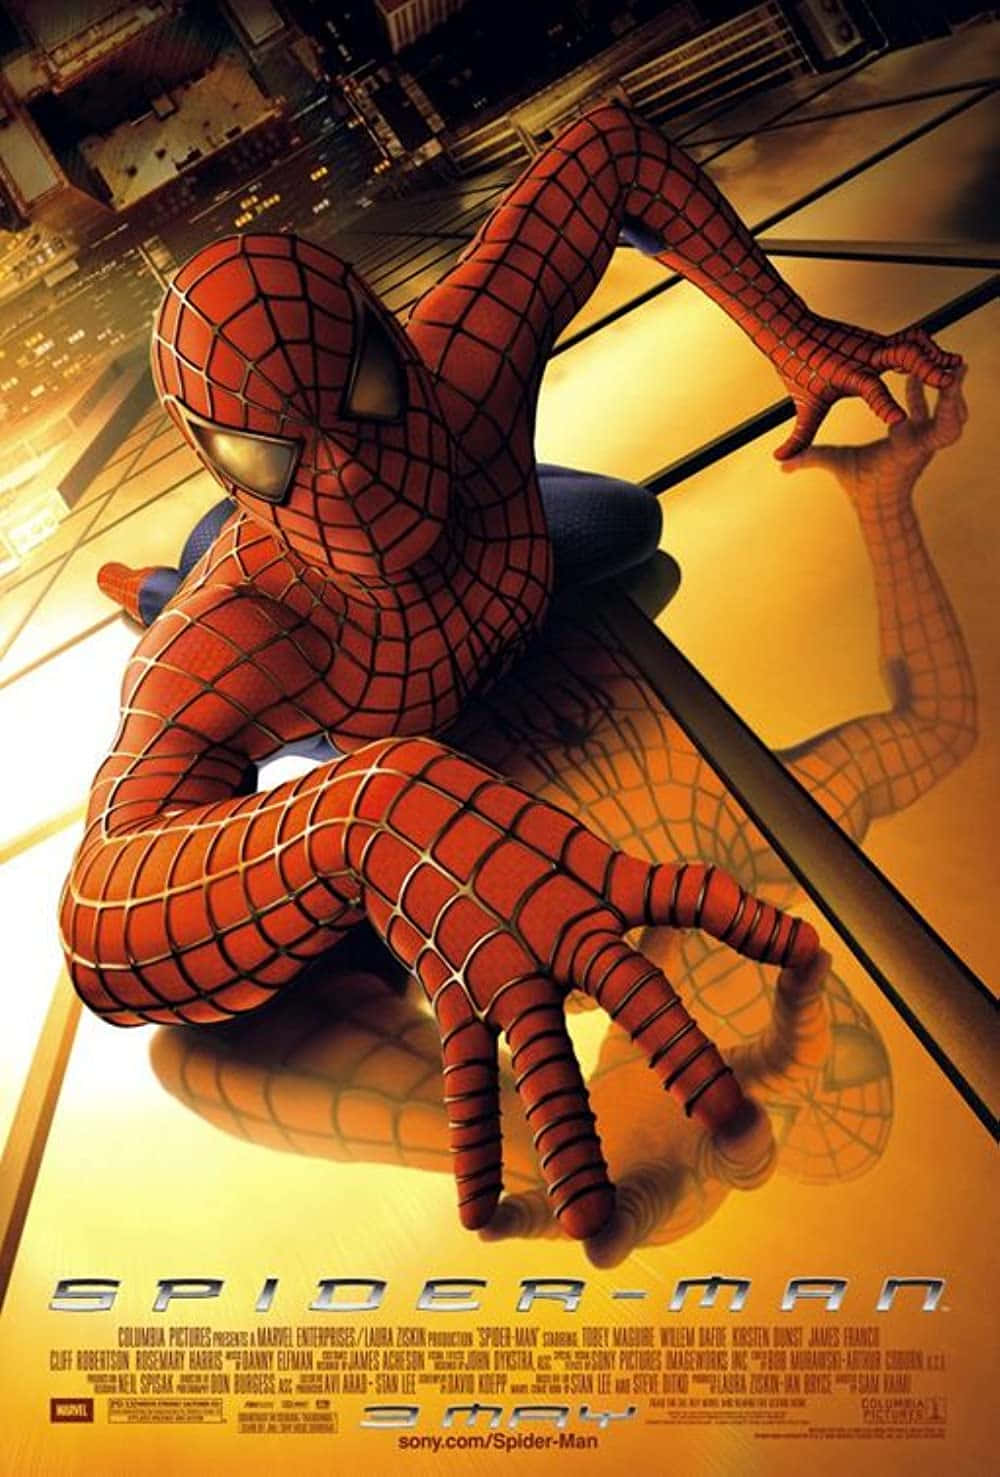 "The Amazing Spiderman"